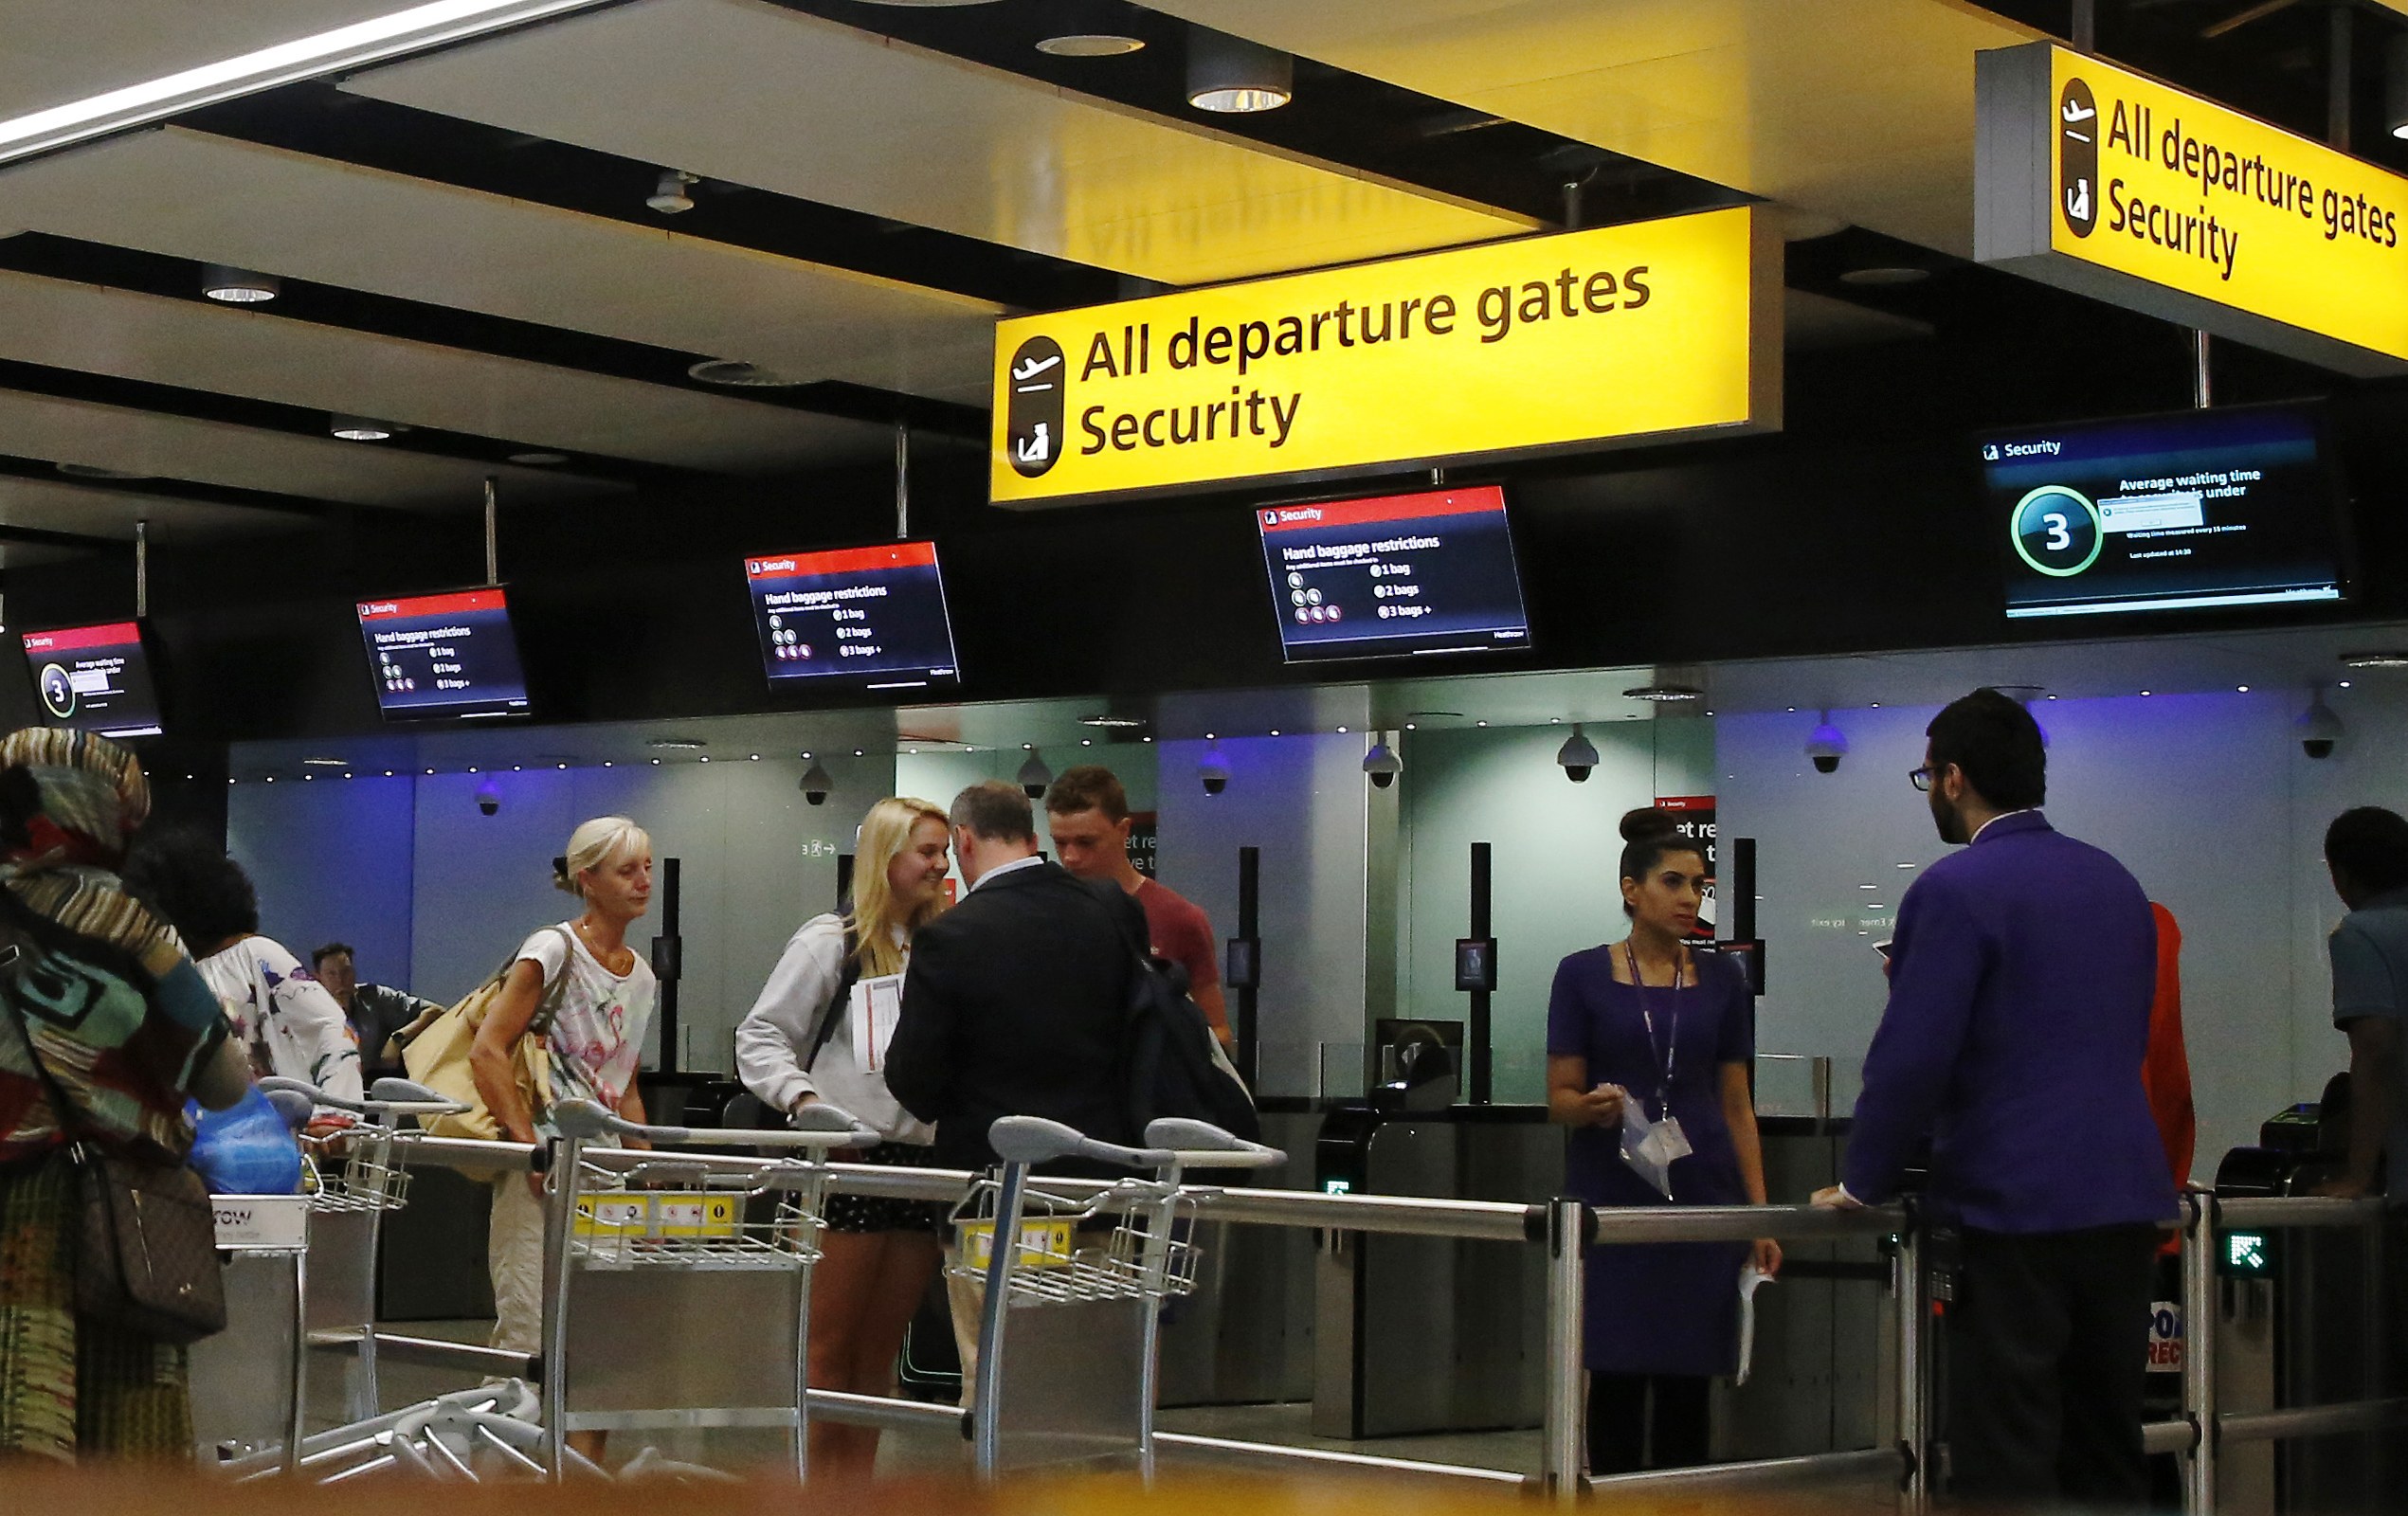 Gran Bretaña prohíbe los aparatos electrónicos descargados en todos los vuelos